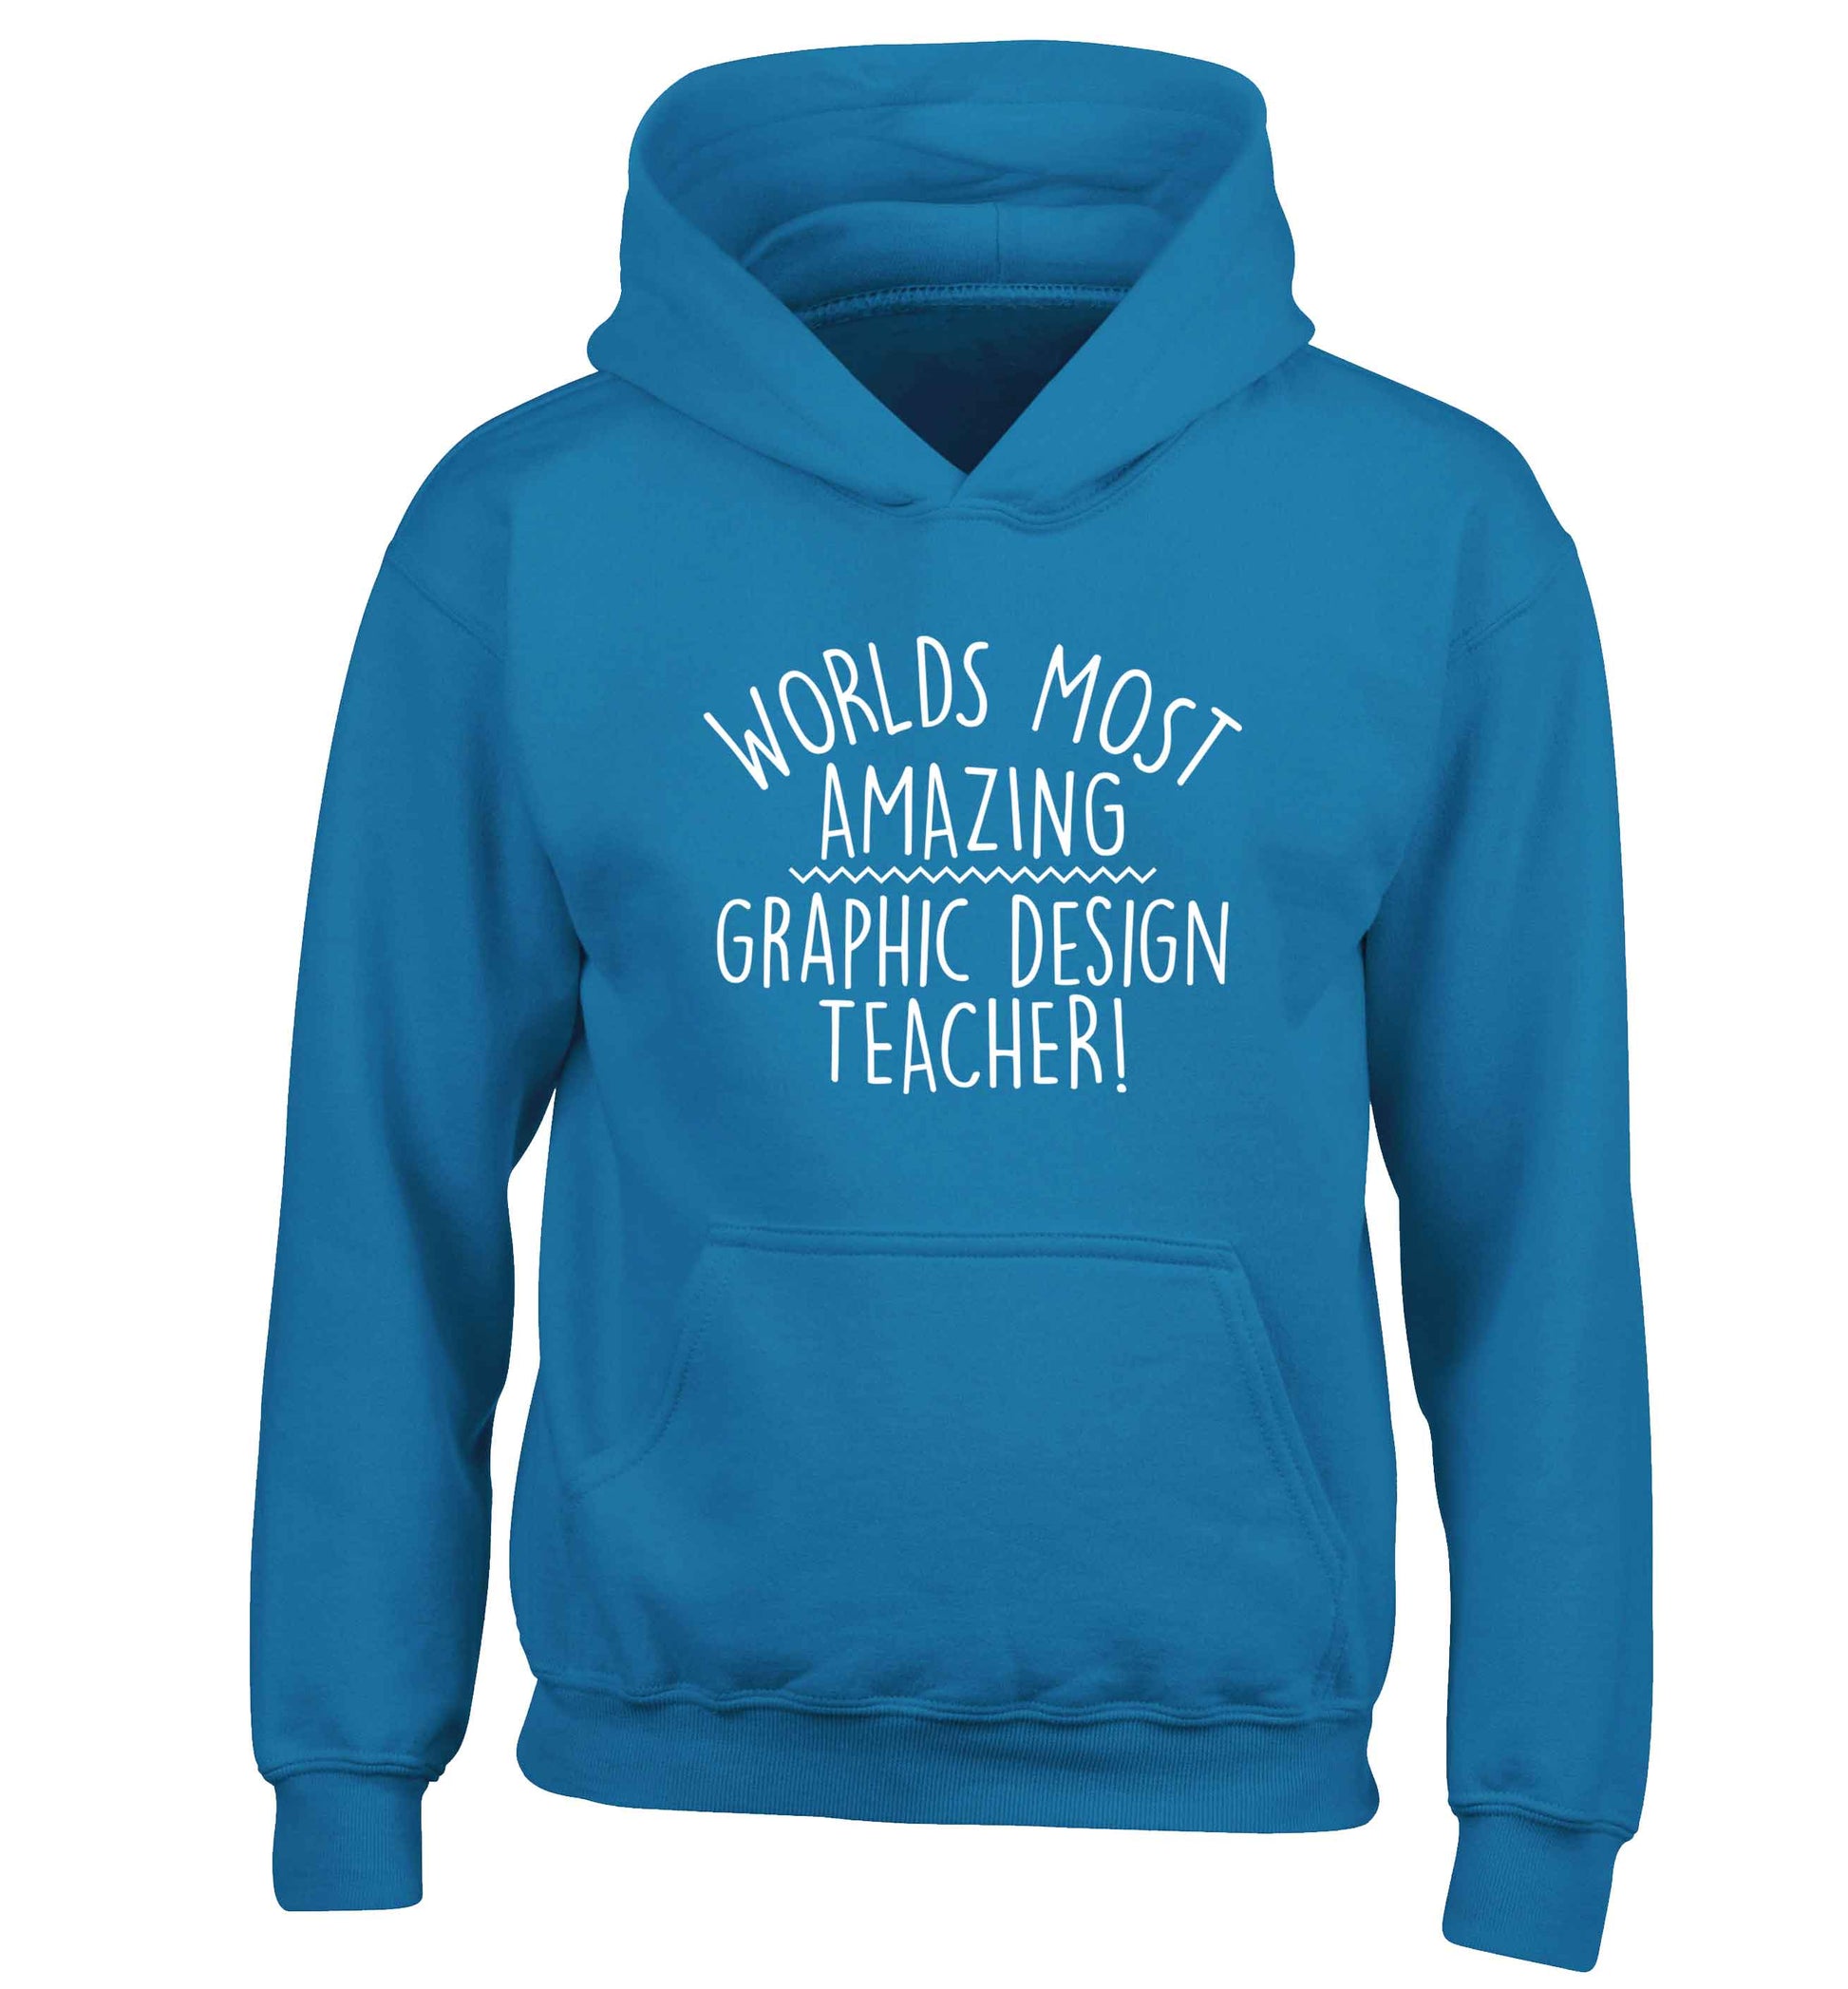 Worlds most amazing graphic design teacher children's blue hoodie 12-13 Years